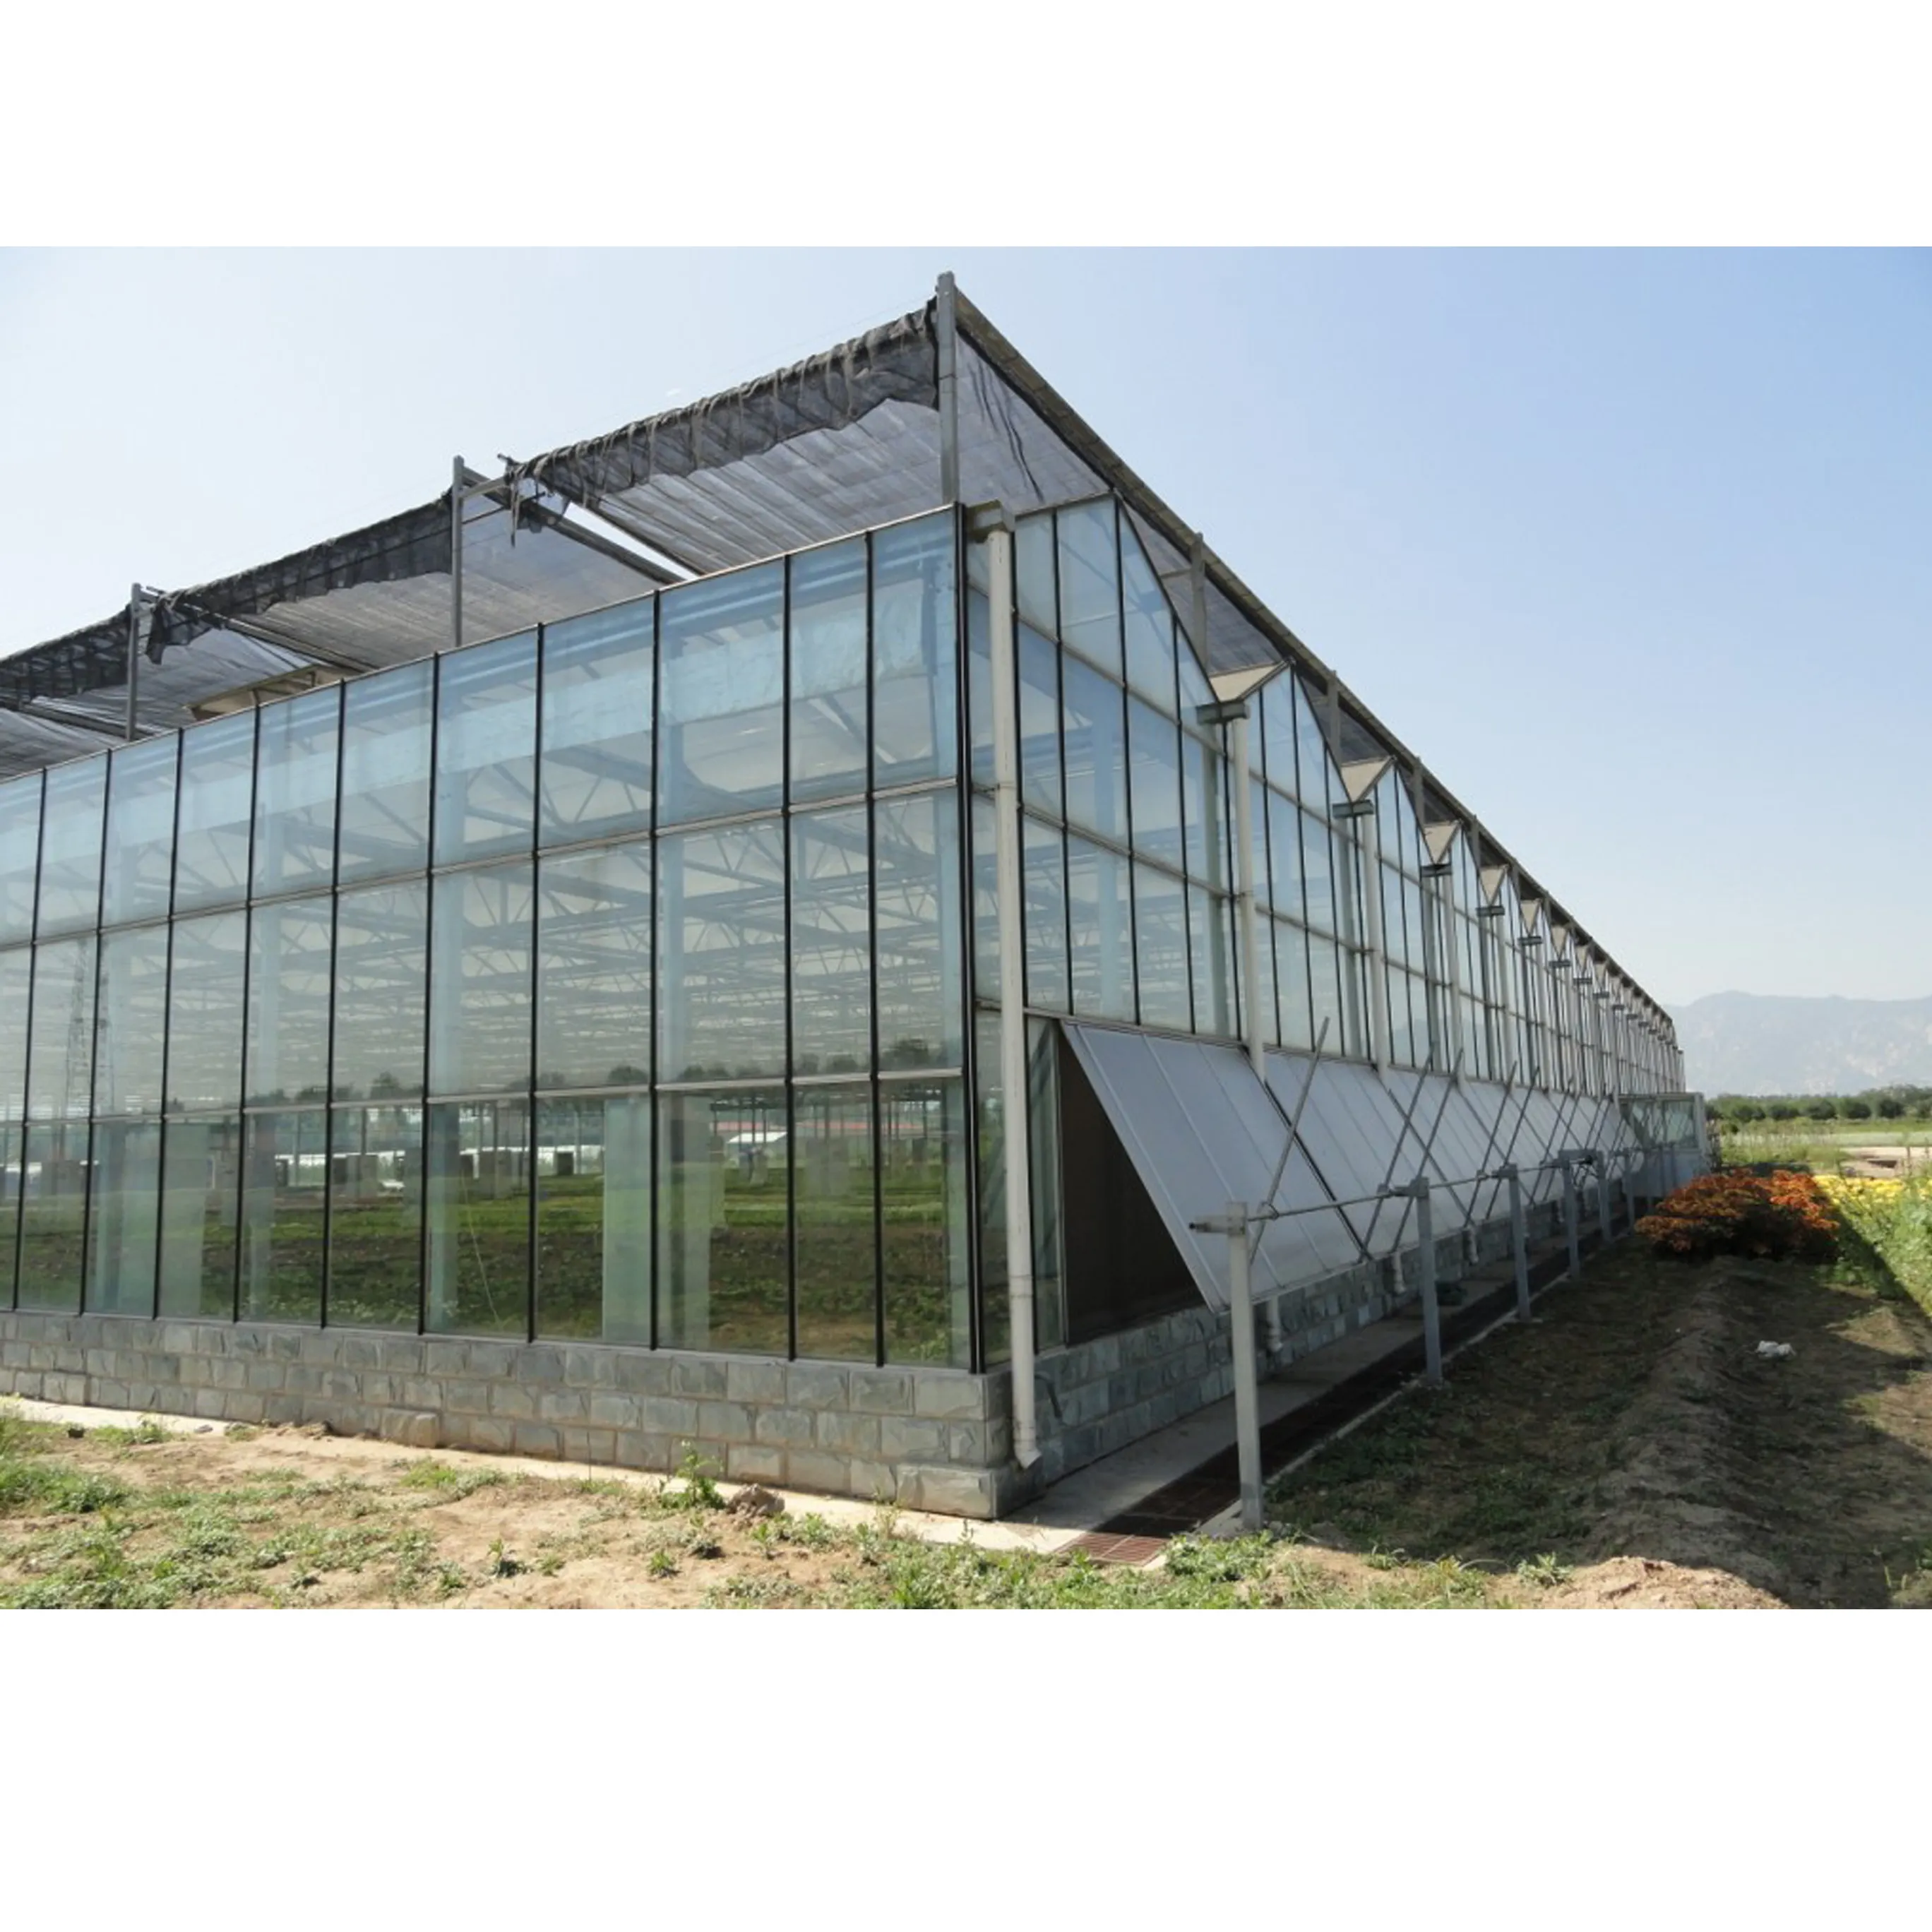 Multi-span serre agricole di vetro verde casa con verticale fattoria coltiva tavolo